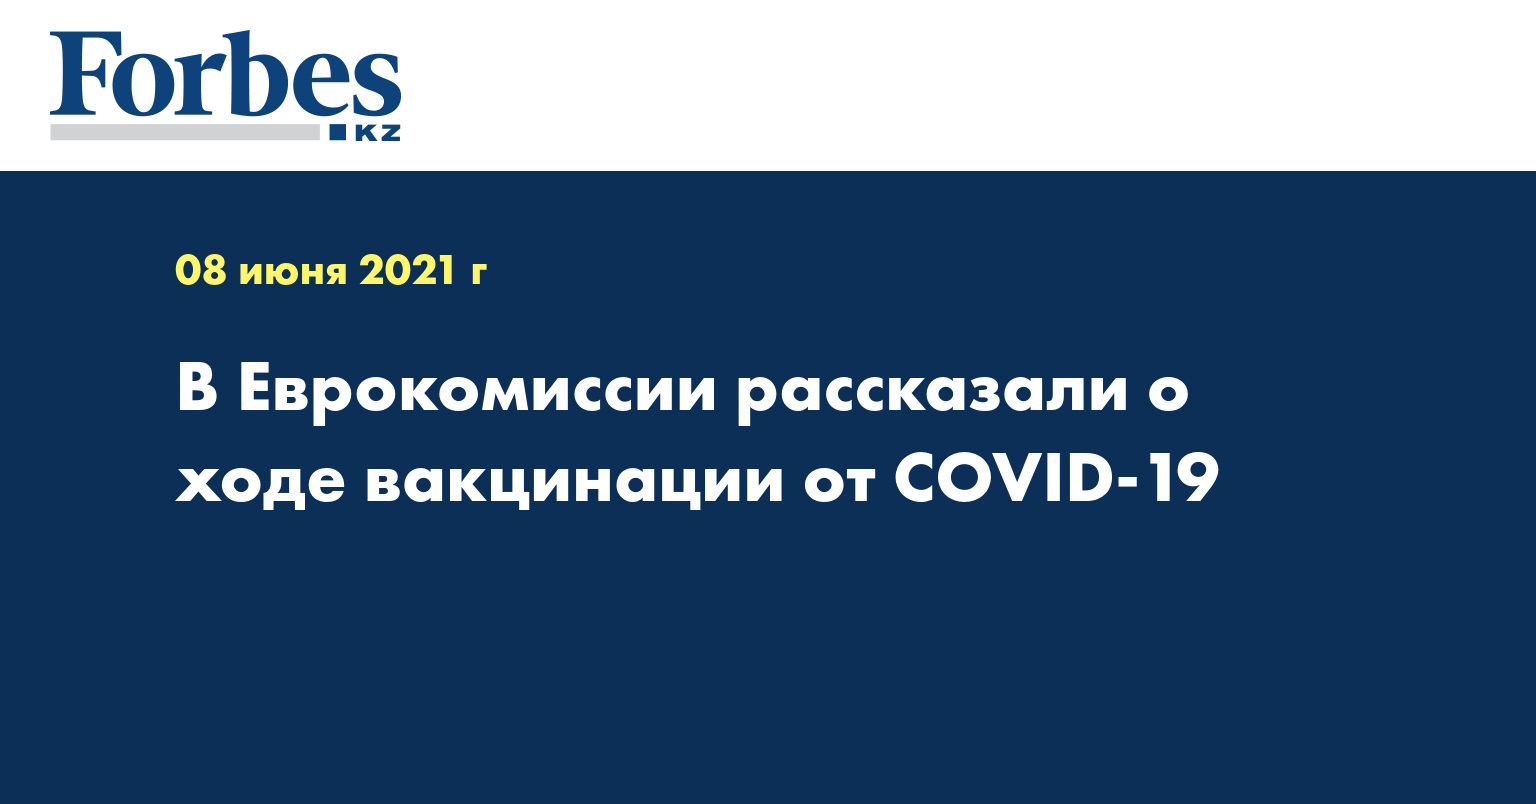 В Еврокомиссии рассказали о ходе вакцинации от COVID-19